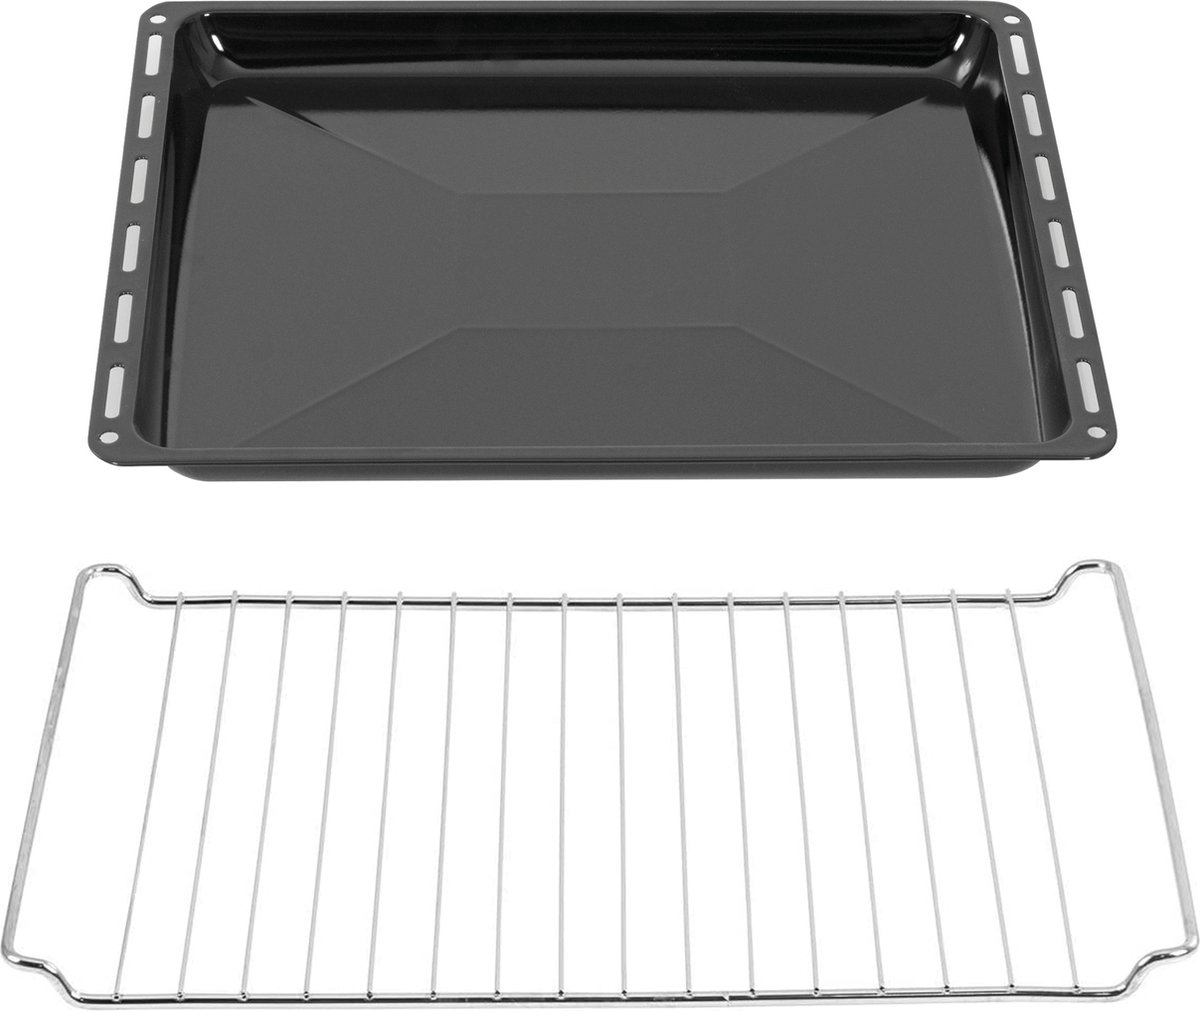 ICQN Bakplaat en Rooster Set voor Oven - 445x375x25 mm - ICQN